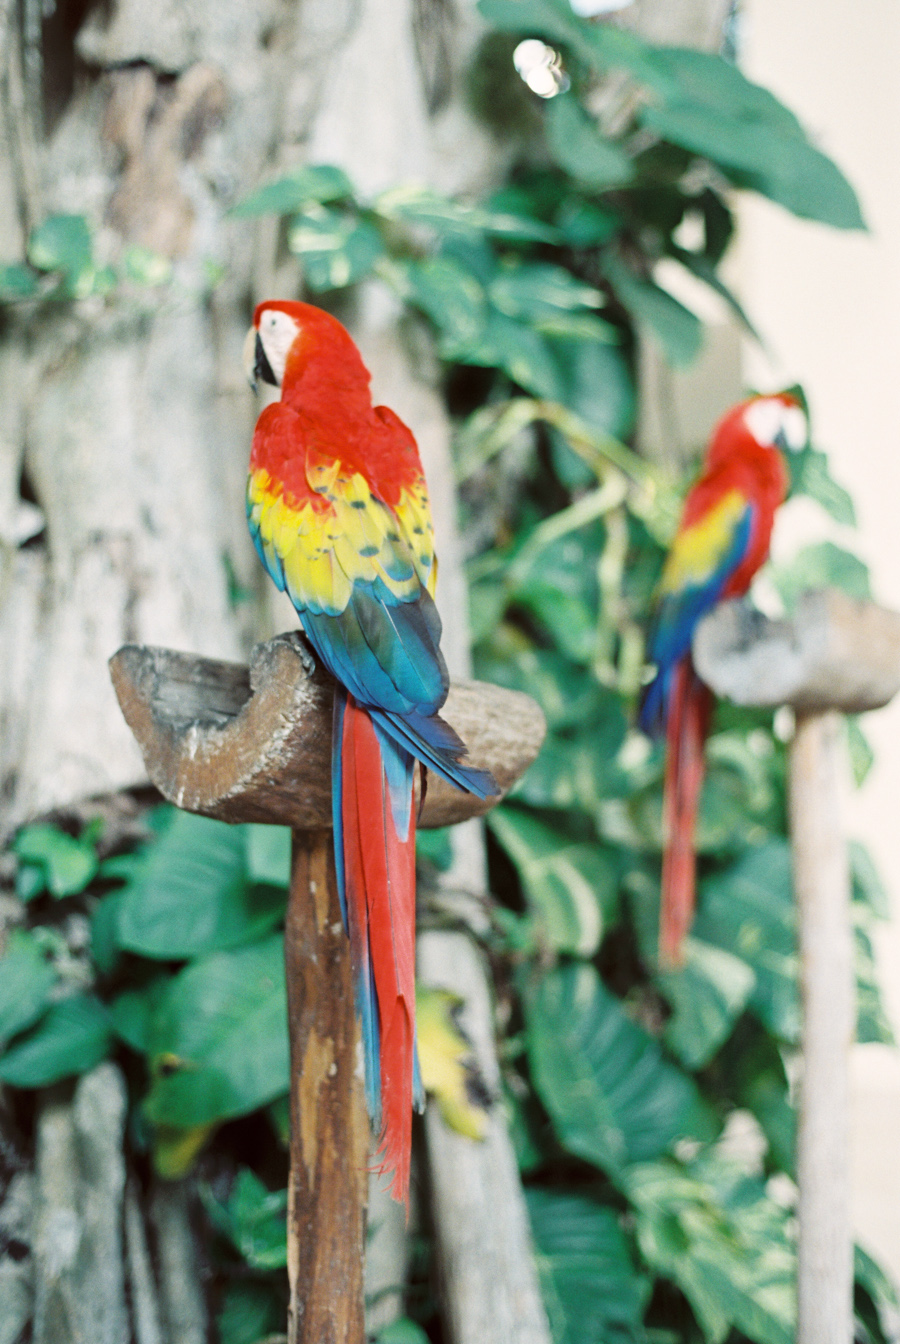 Vibrant Parrots in Playa del Carmen Mexico